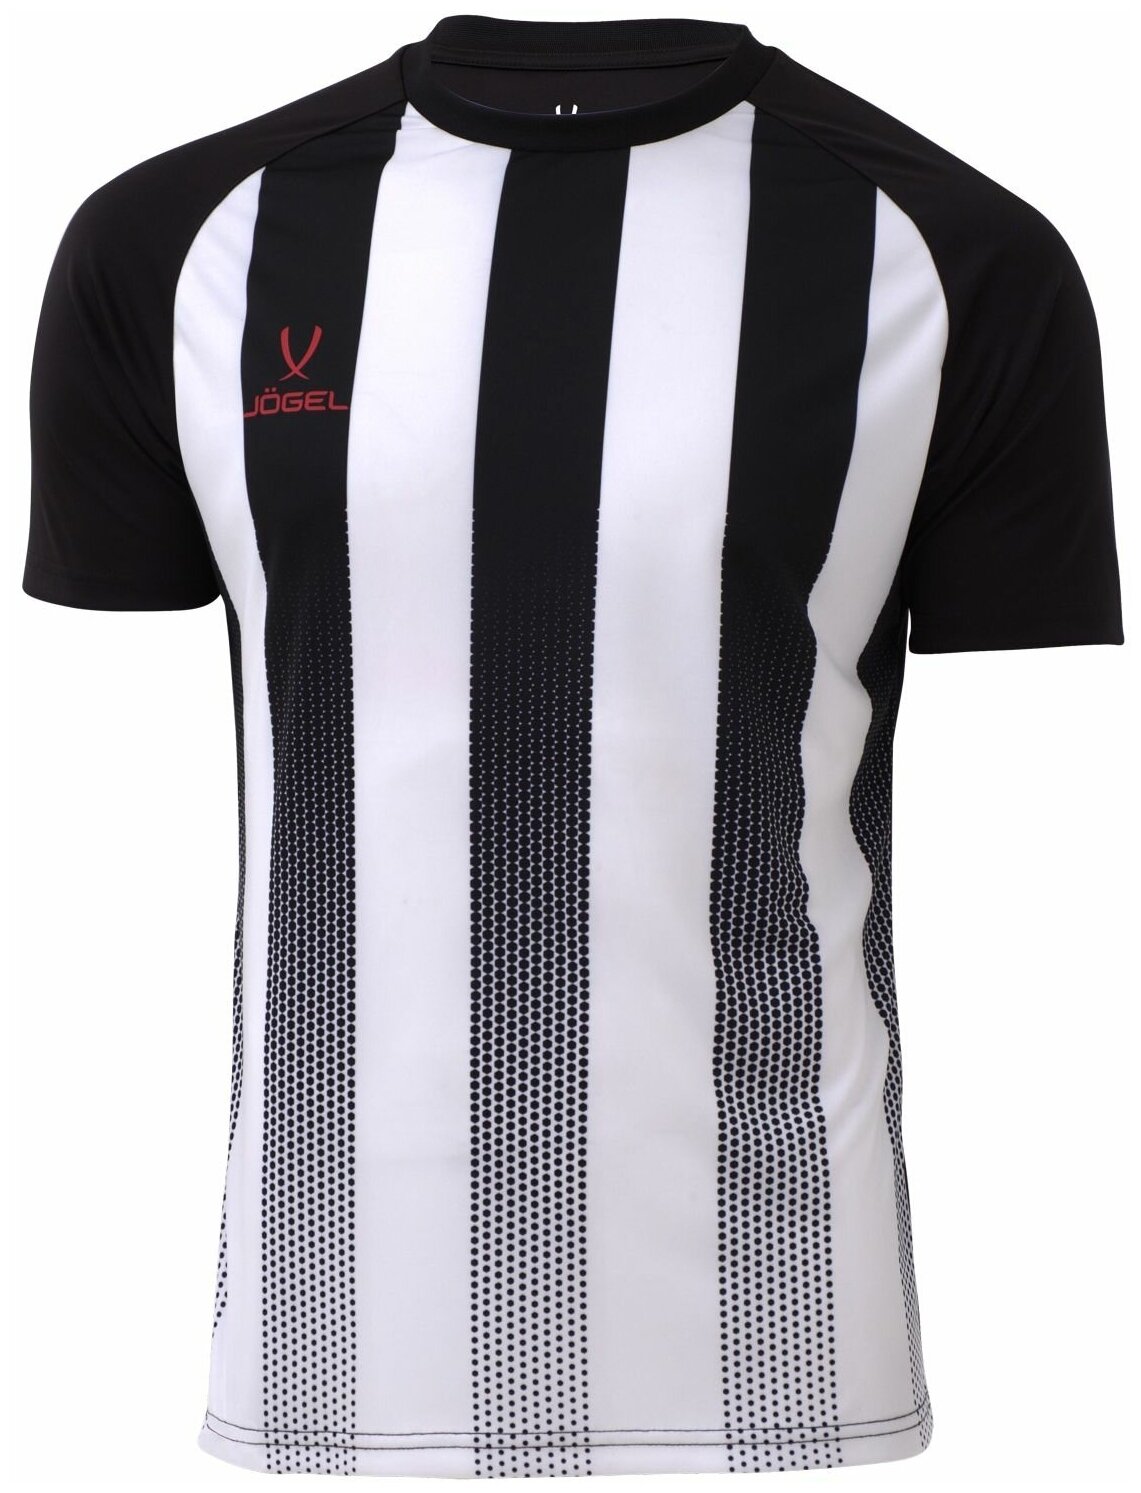 Футболка Jogel Футболка игровая Camp Striped Jersey от Jogel. Детская. Цвет: белый/черный. Размер: XS.